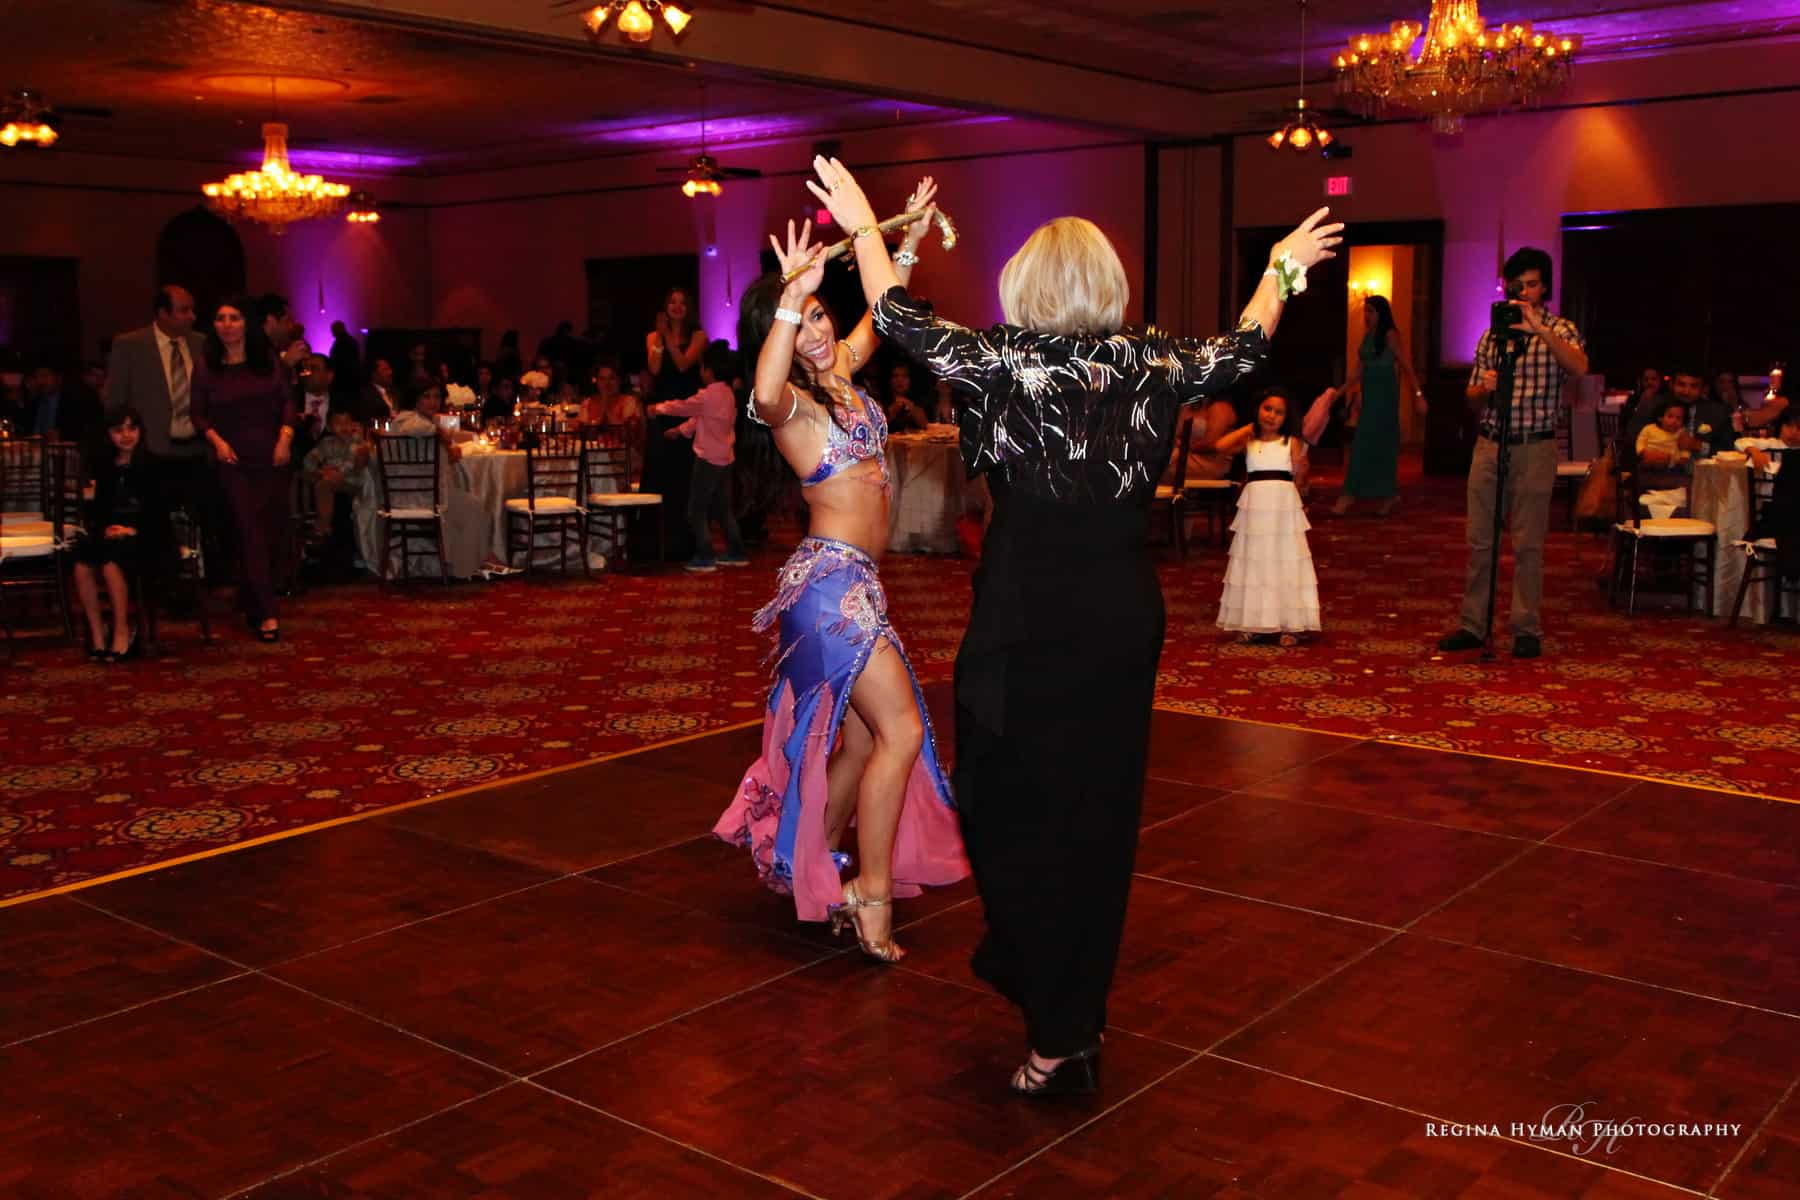 Orlando wedding belly dancer Carrara Nour performs an Egyptian cane dance at the Ballroom at Church Street in Orlando